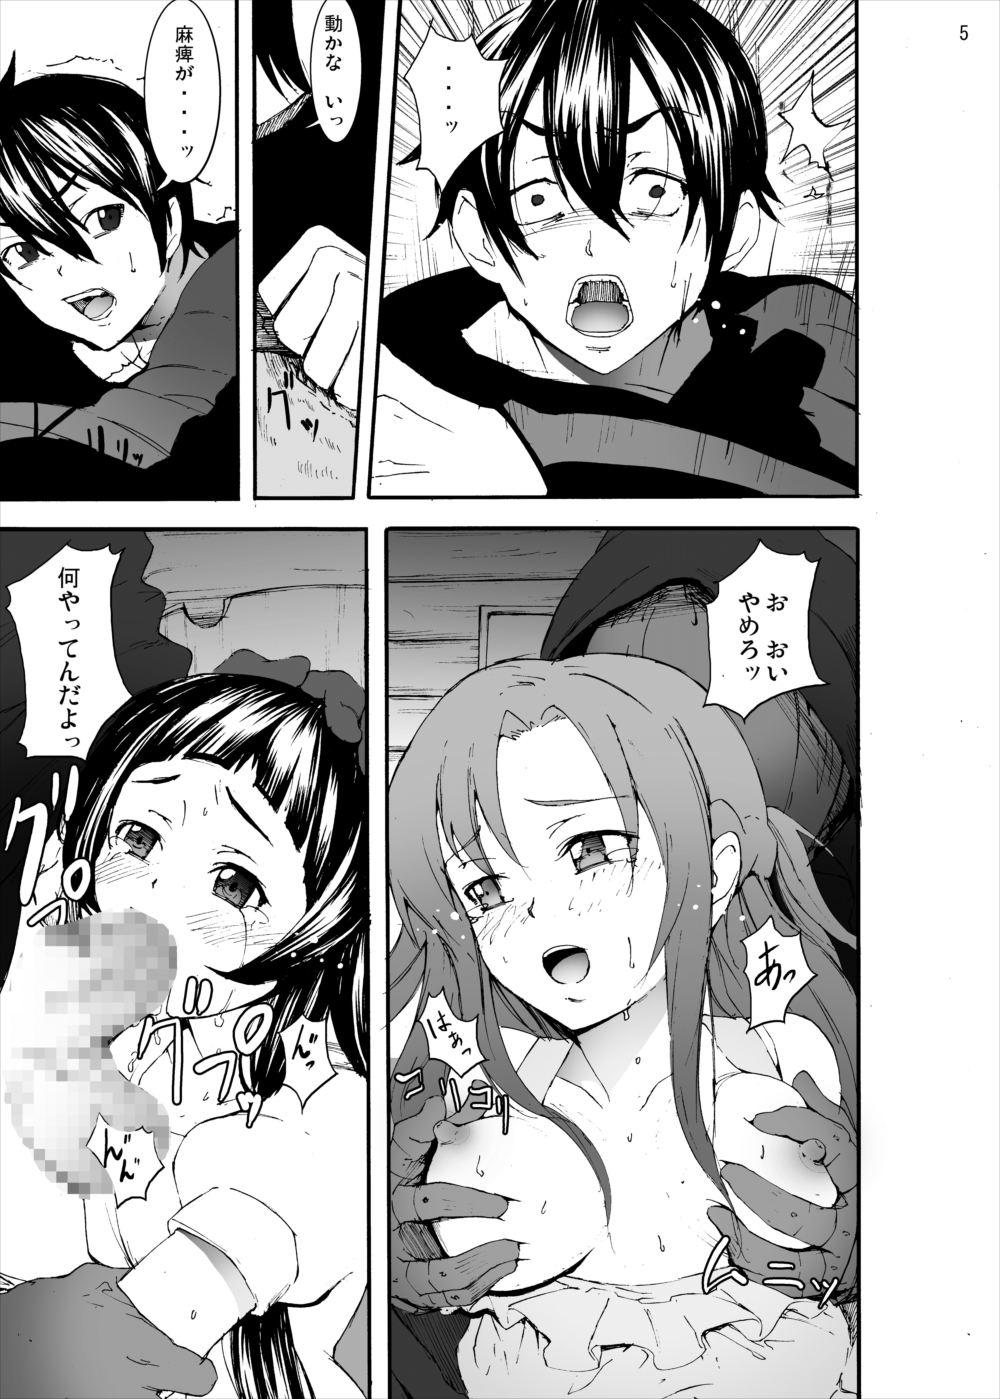 Hotwife Asuna to Yui no Jigoku Rape... Ryoujoku Oyakodon Story - Sword art online Creampies - Page 4